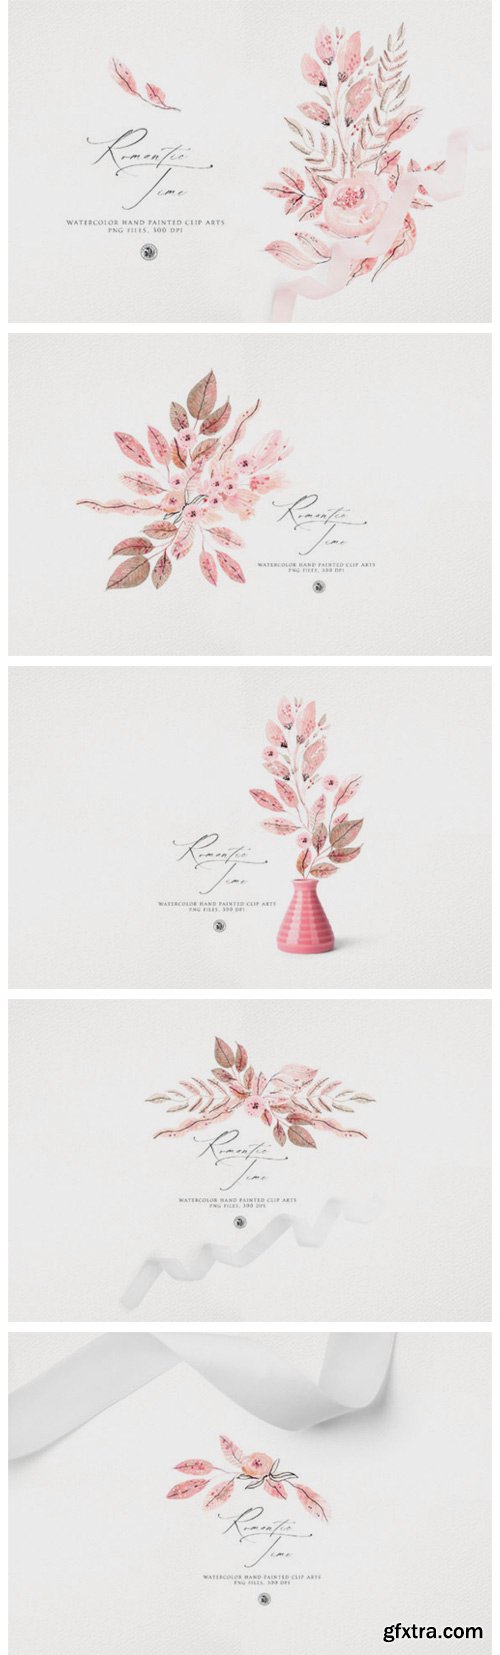 Romantic Time - Watercolor Floral Set 4144793